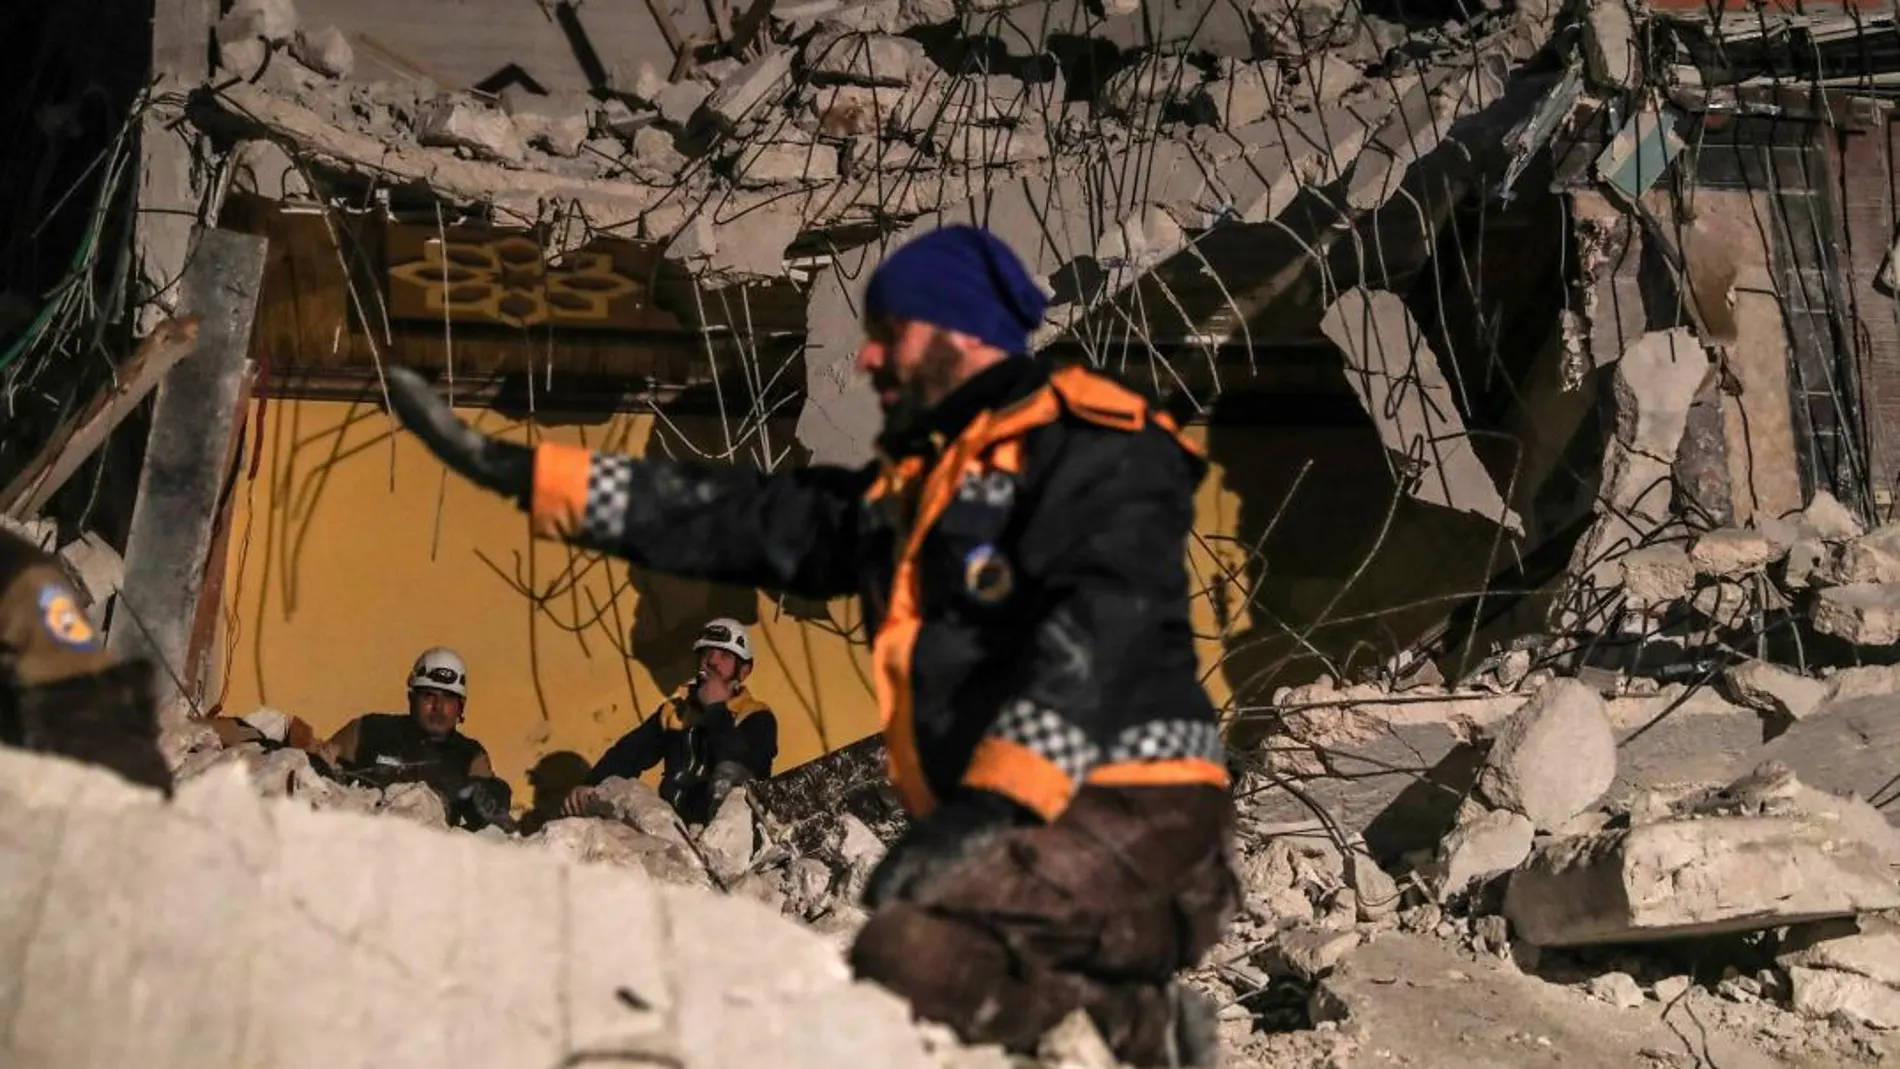 Voluntarios de los Cascos Blancos y otras organizaciones buscan víctimas entre los escombros de un edificio tras una explosión de origen desconocido en la ciudad de Idleb, en el norte de Siria, el pasado 9 de abril